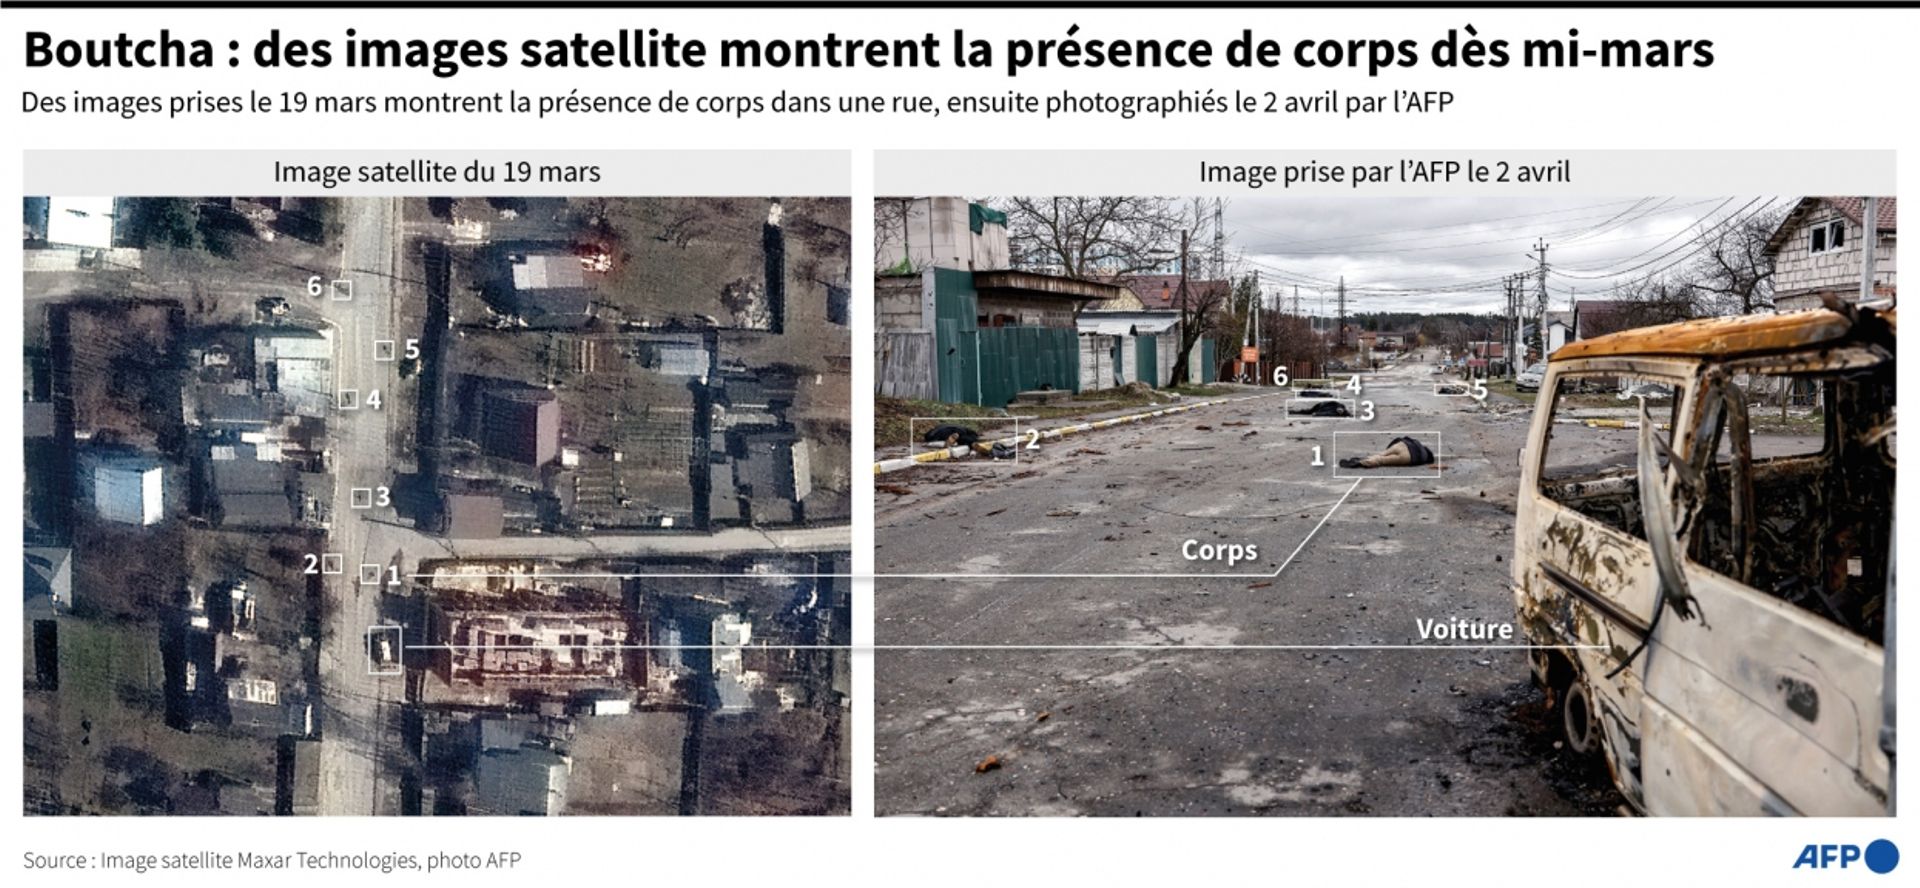 Comparaison de deux images prises les 19 mars et 2 avril montrant des corps de personnes en vêtements civils dans une rue de Boutcha (SIMON MALFATTO, VALENTINA BRESCHI / AFP).